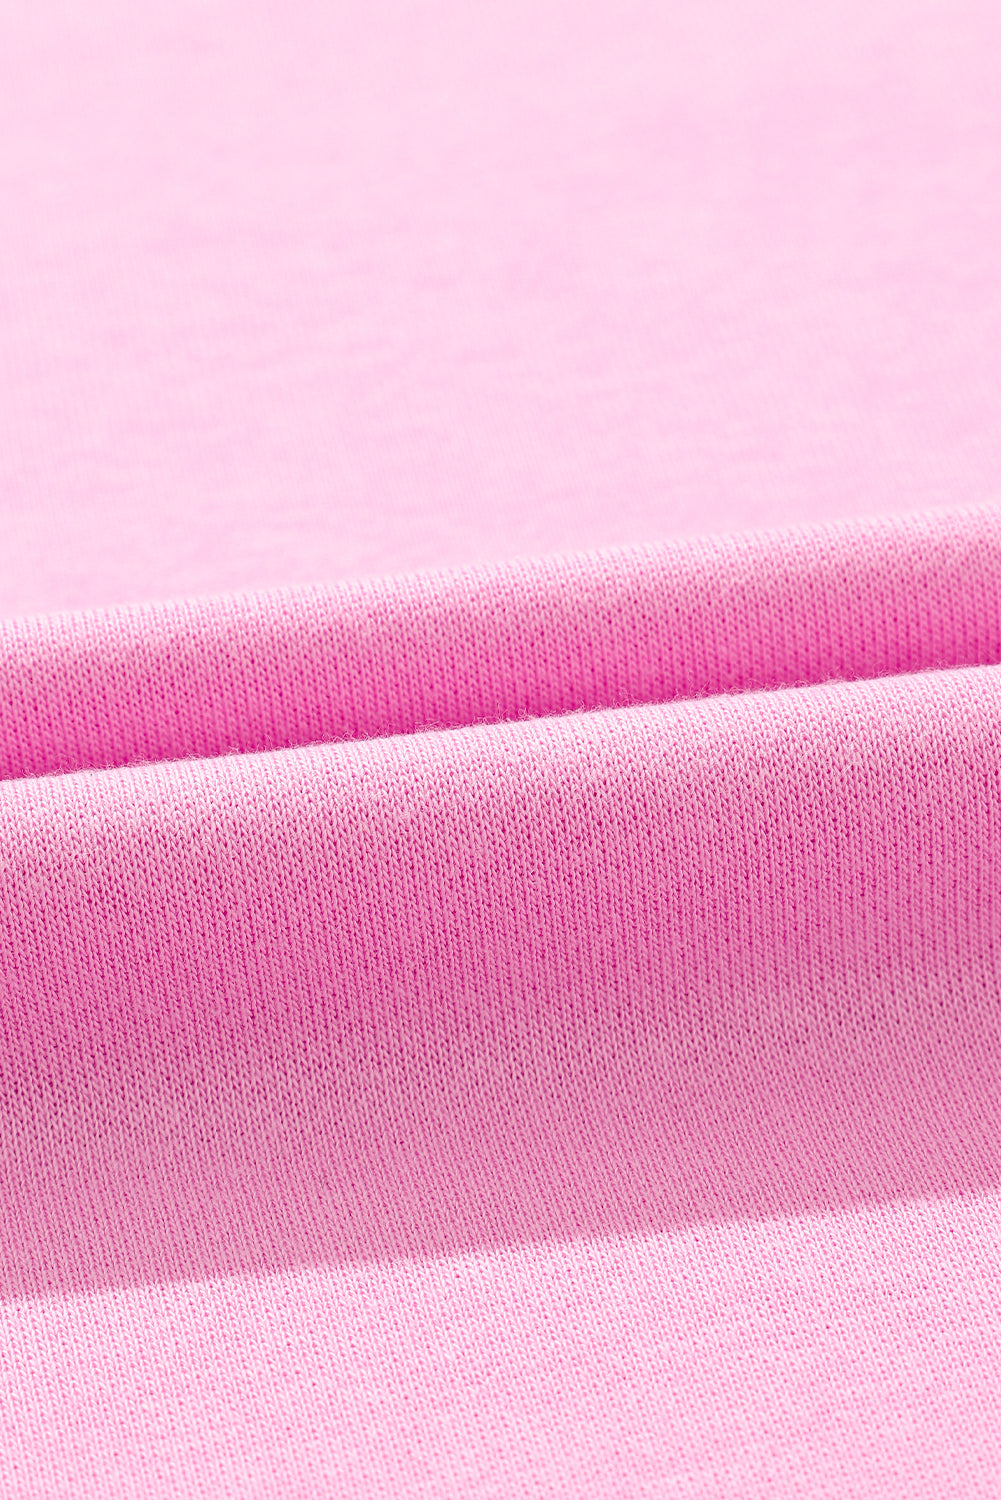 Pulover dugih rukava s ružičastim šljokicama